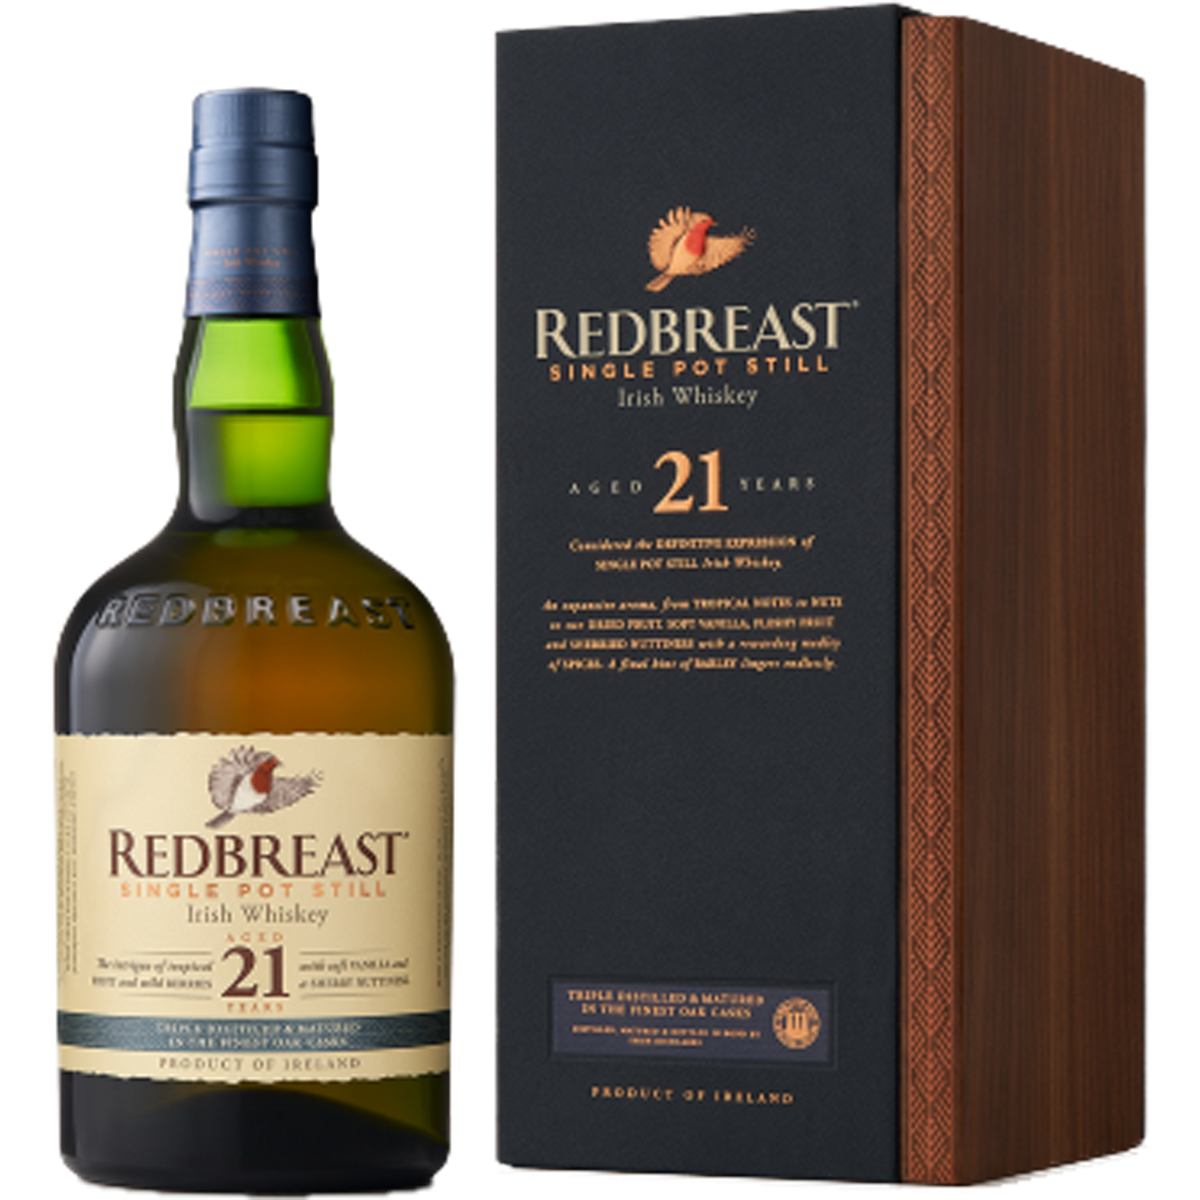 Redbreast Single Pot Still Aged 21 Years Single Pot Still Irish Whiskey